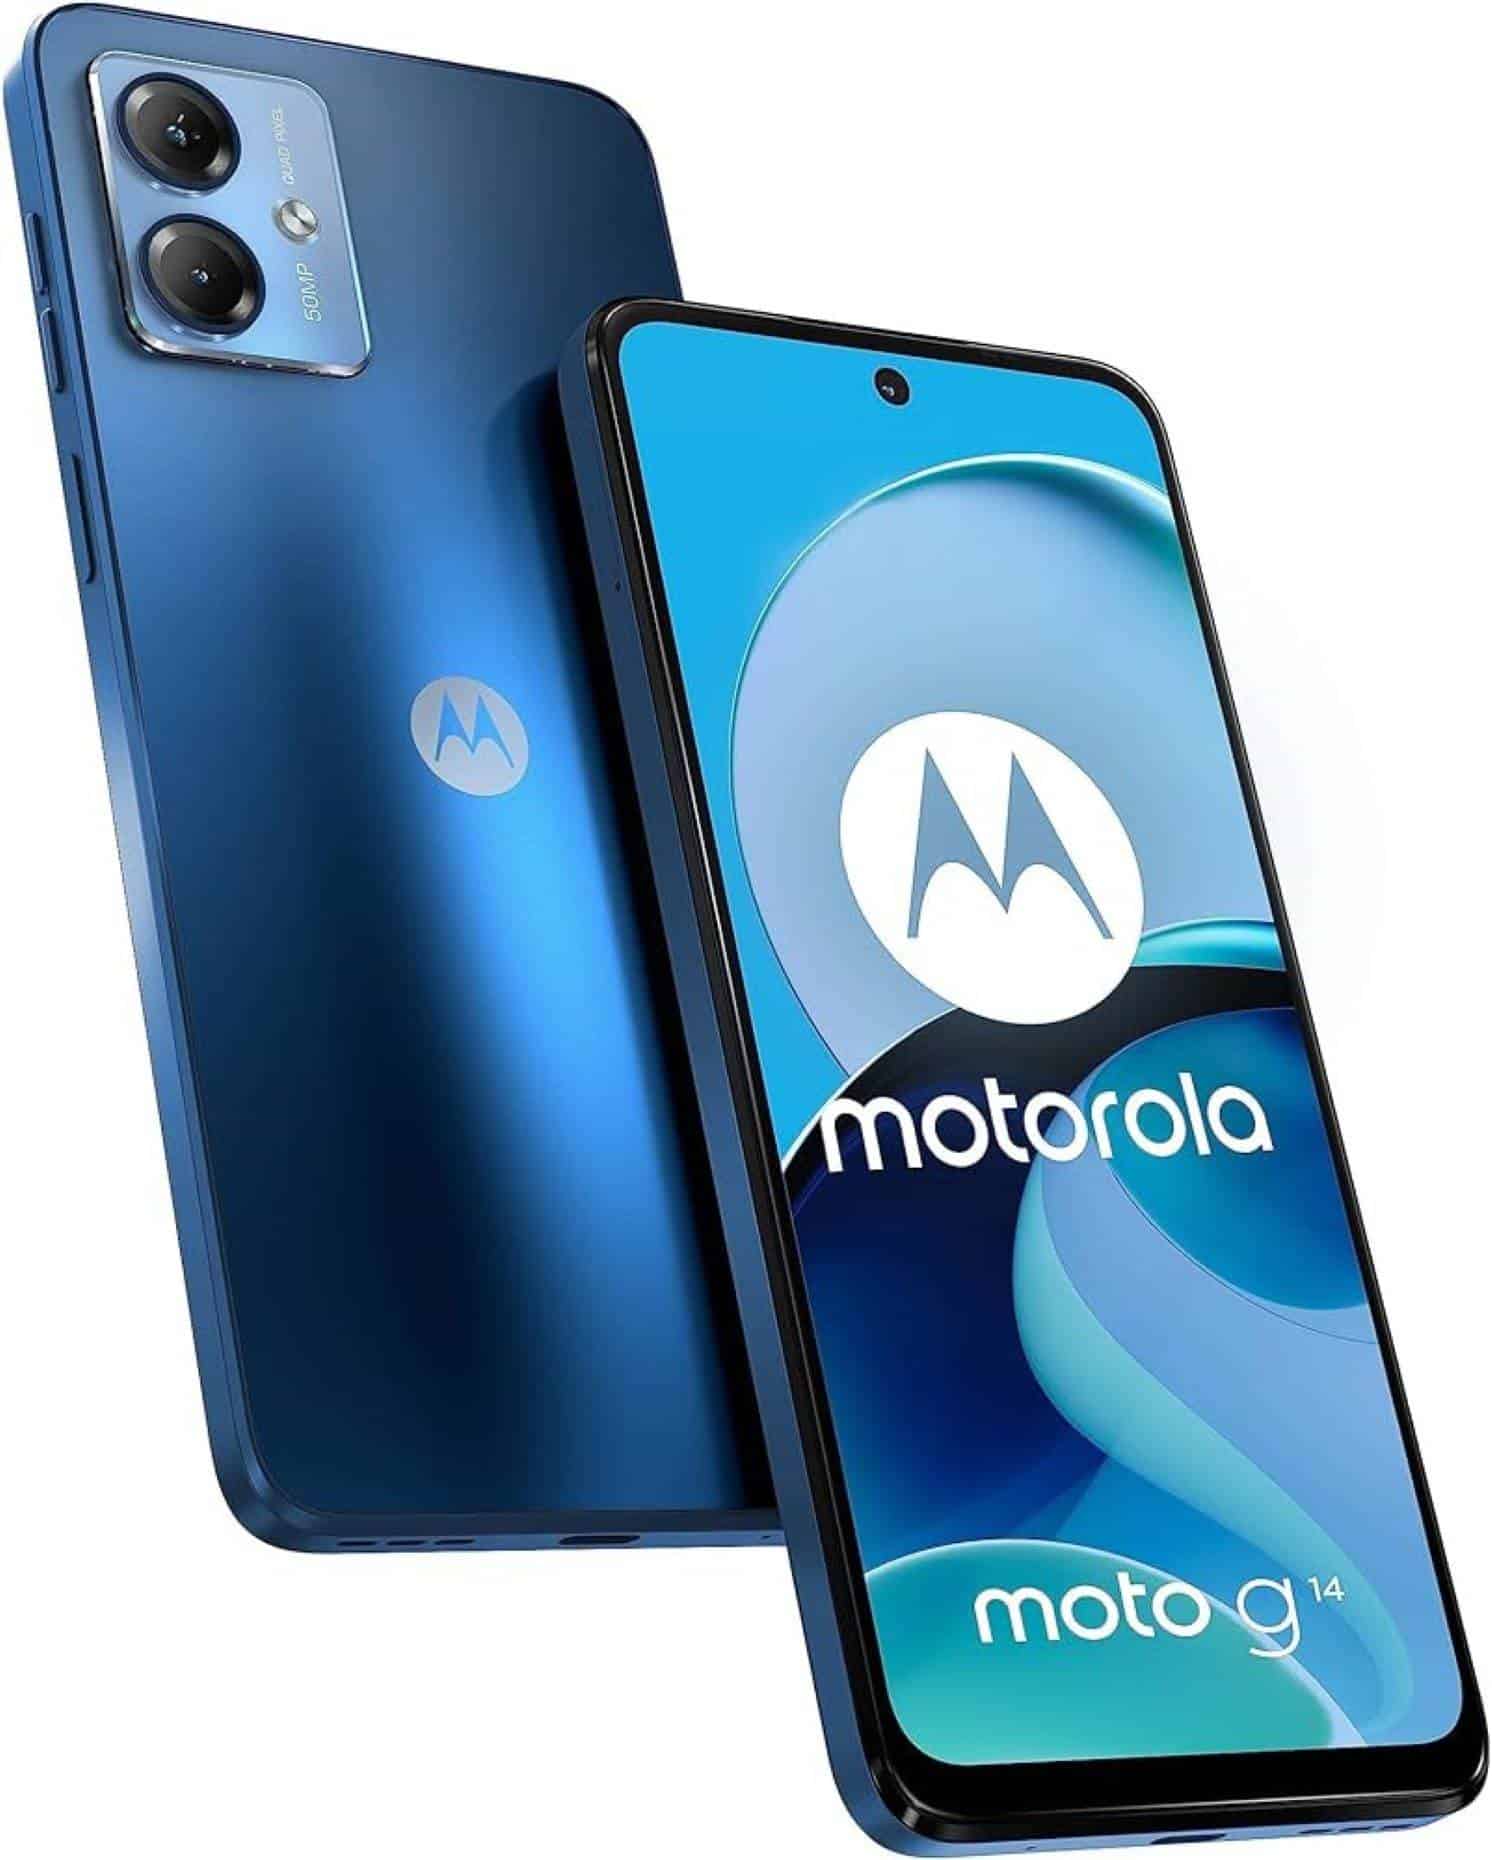 Características del smartphone Motorola Moto G14